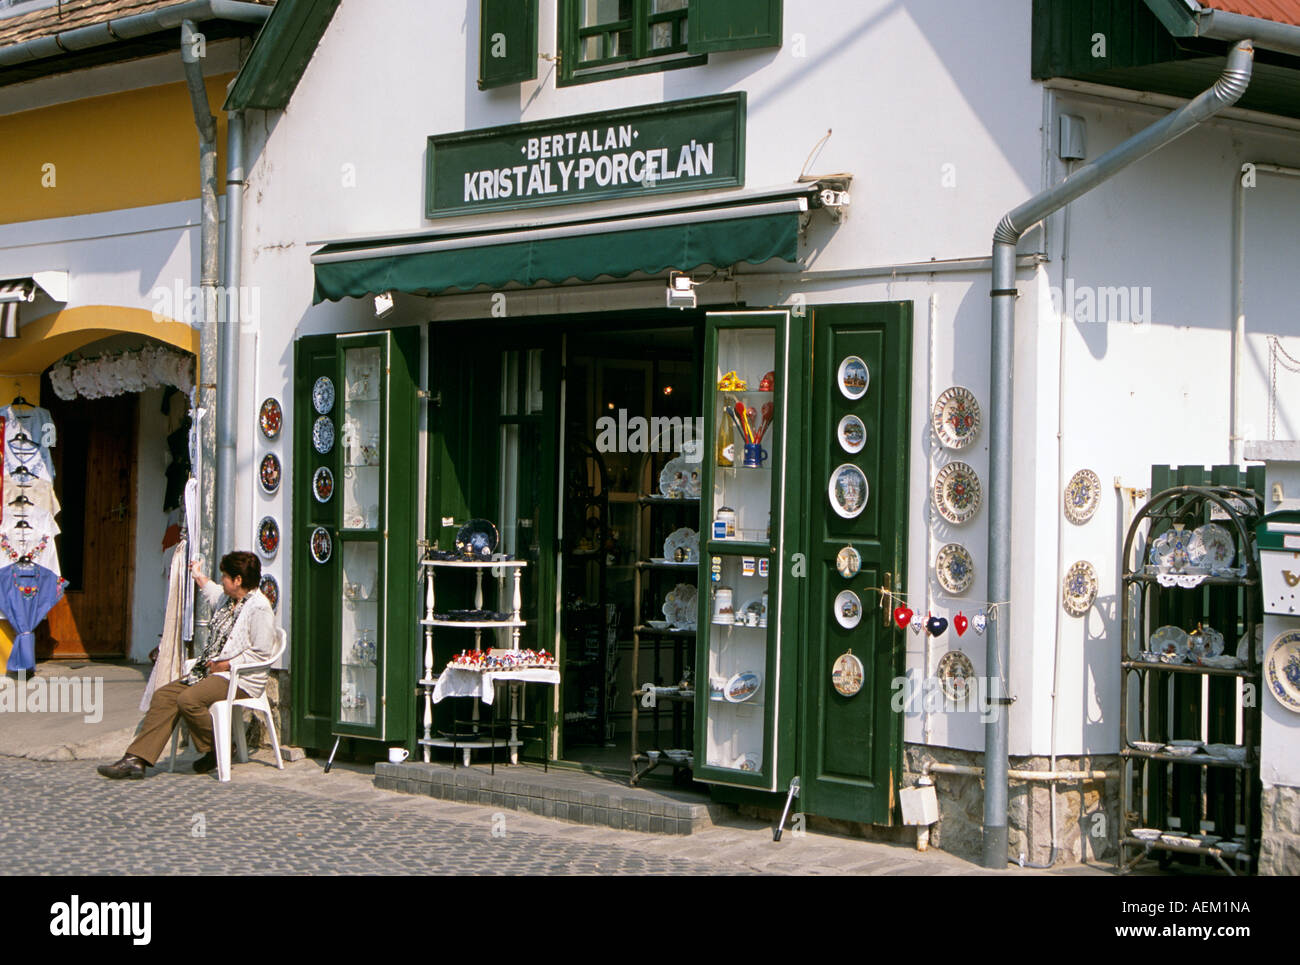 Bertalan cristalli e porcellane regali e souvenir shop e il negoziante al di fuori, Szentendre, Ungheria Foto Stock